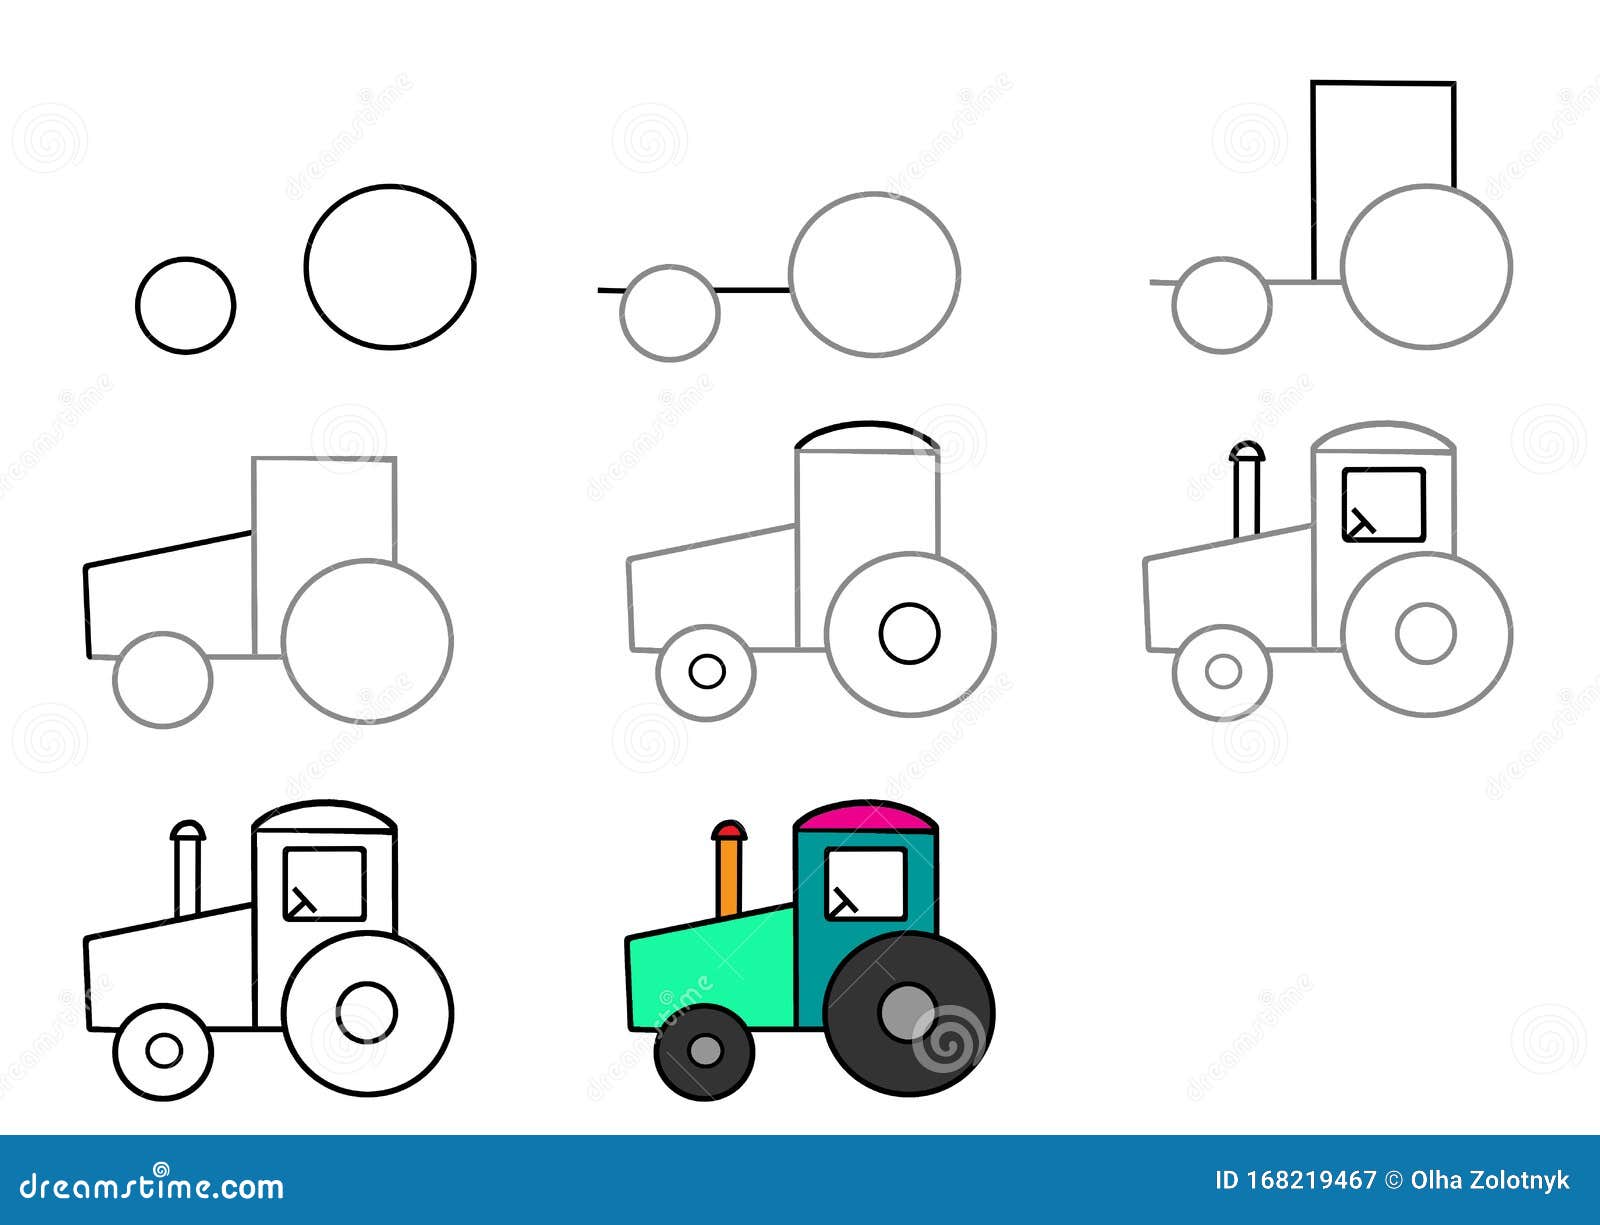 Como desenhar um trator passo a passo fácil (how to draw a tractor easy  step by step) 